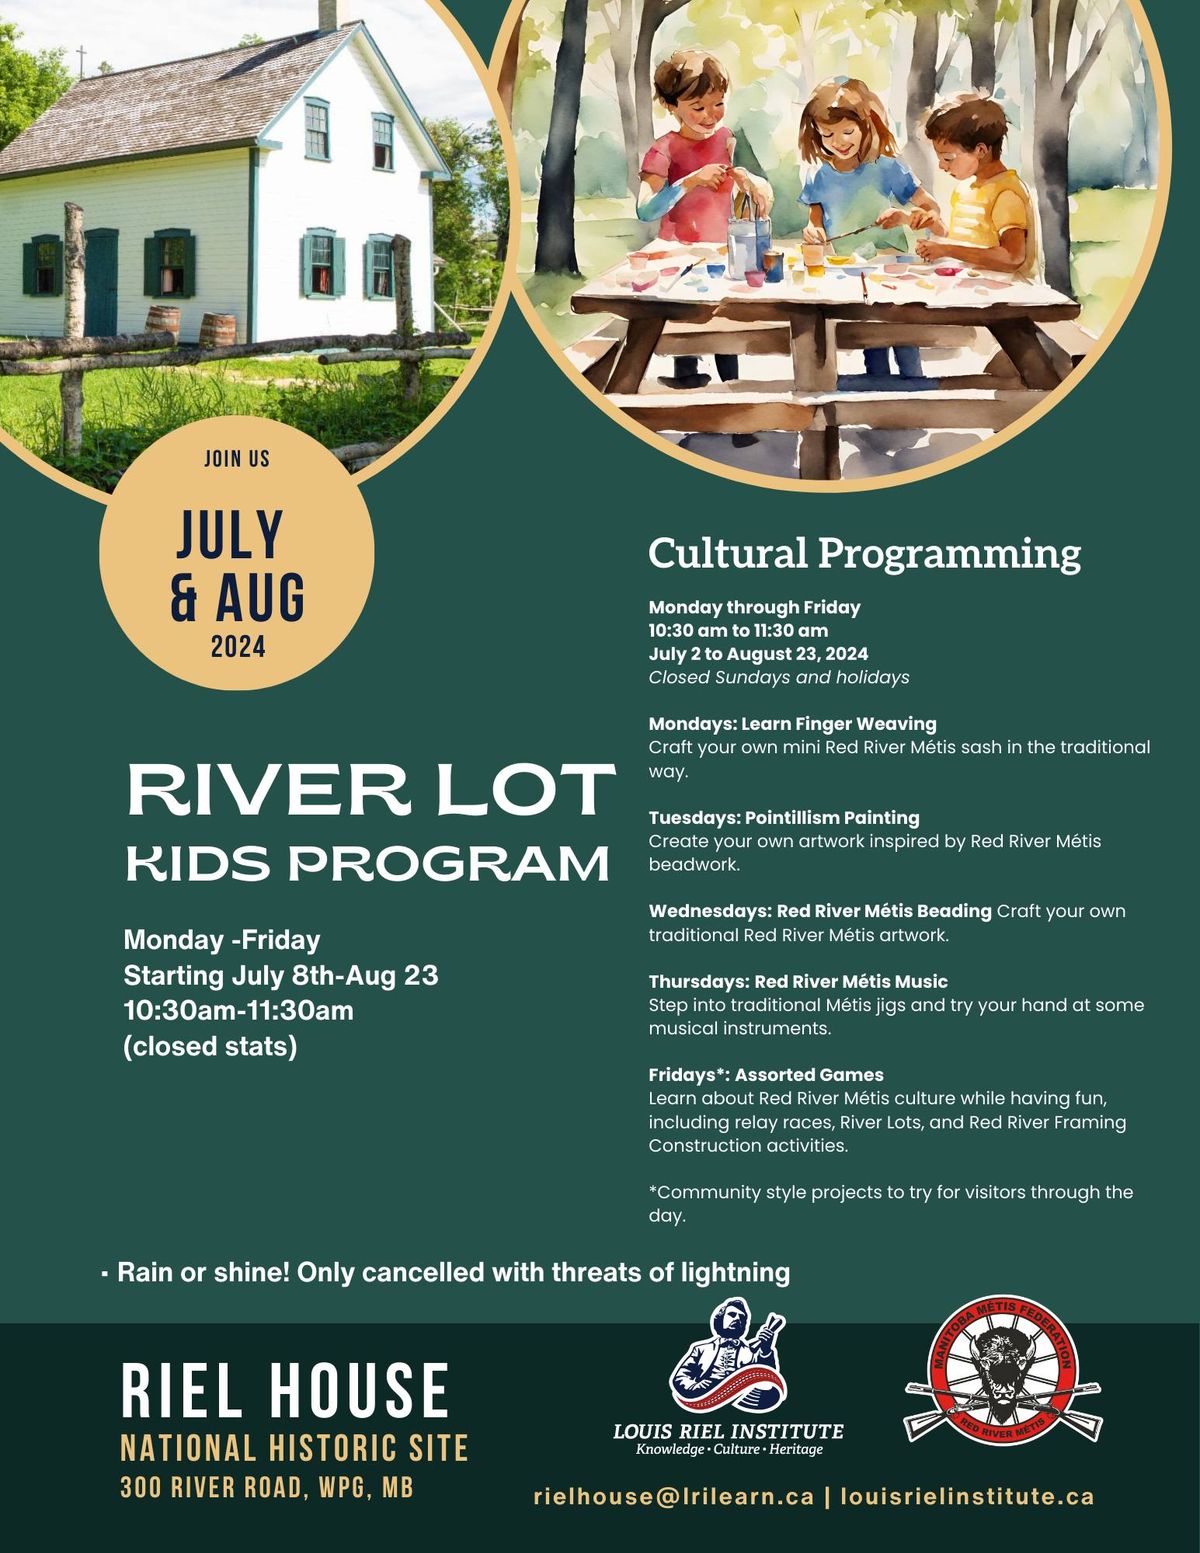 River Lot Kids Program week one